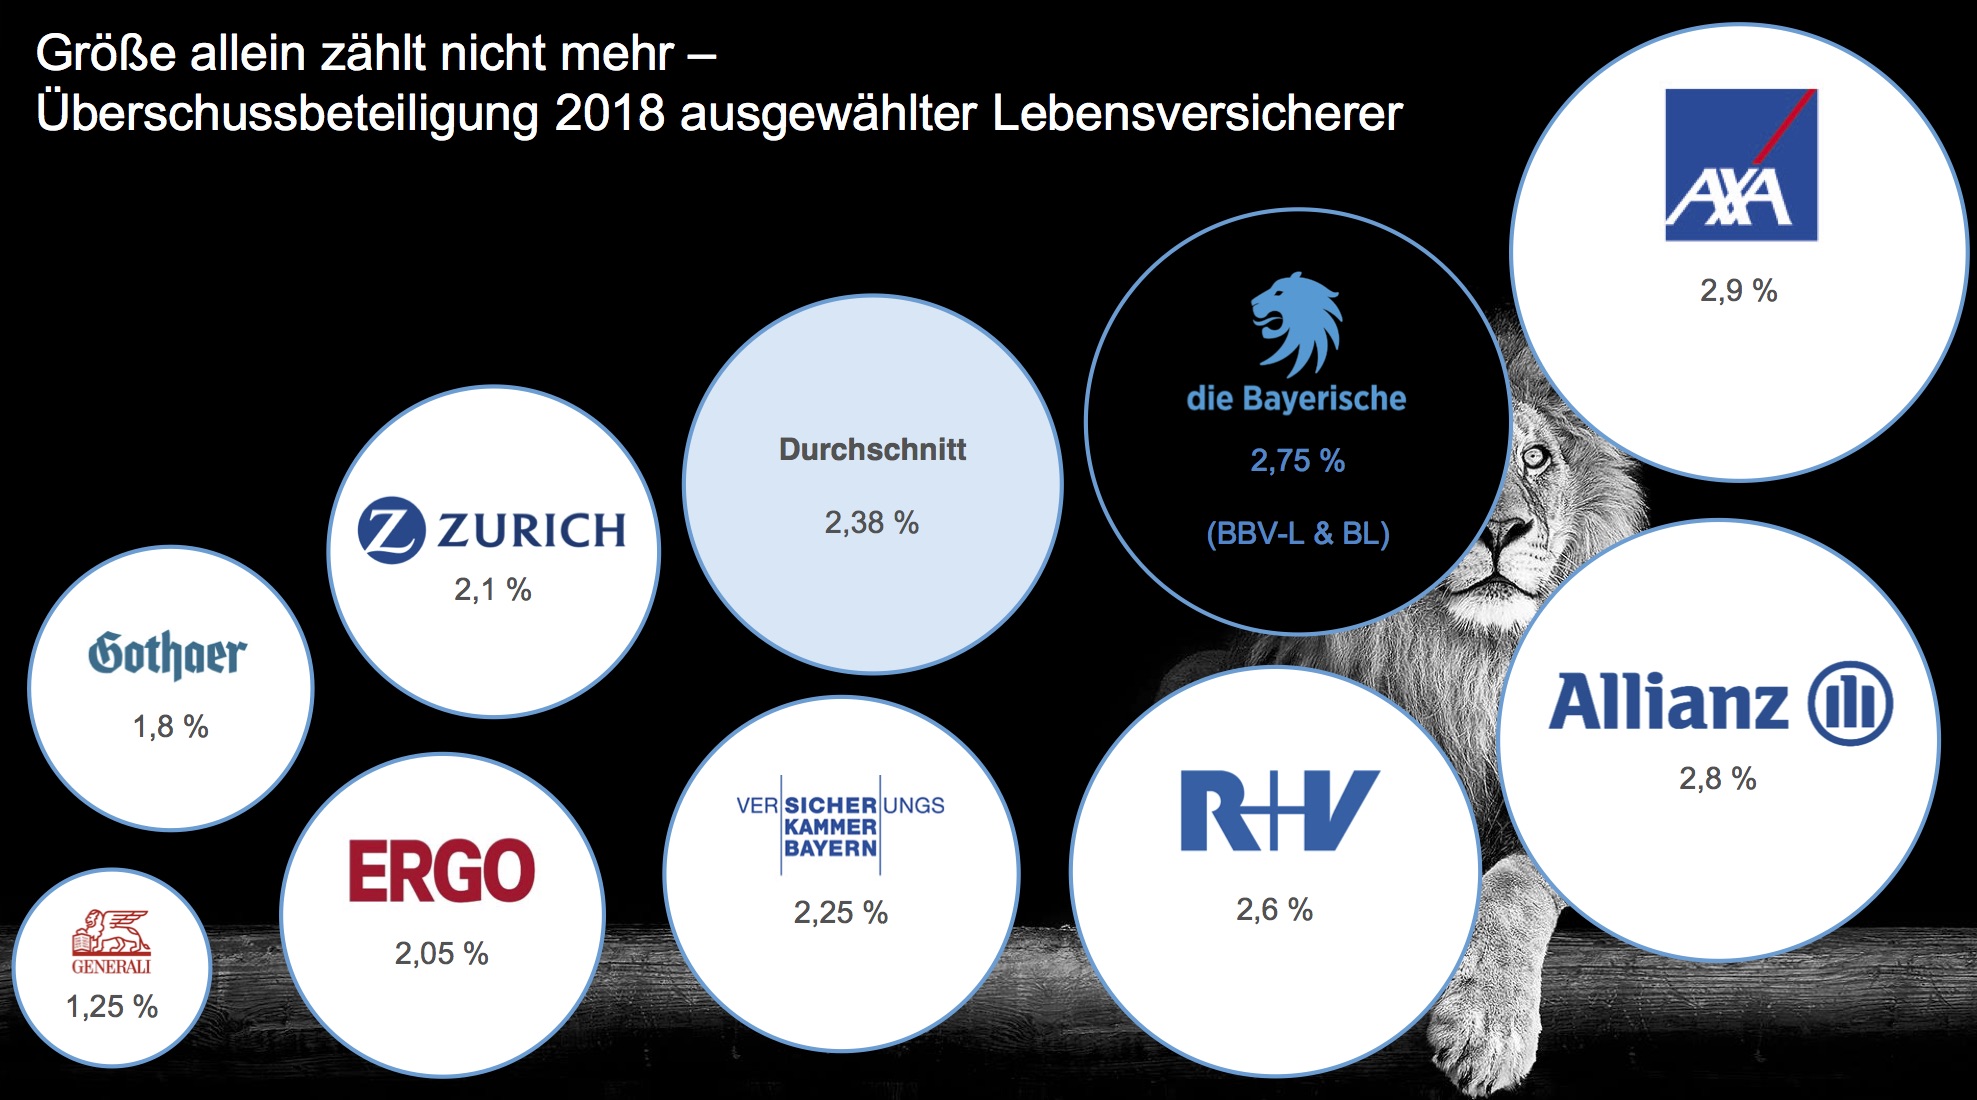 Überschussbeteiligungen 2017 im Vergleich. Quelle: die Bayerische